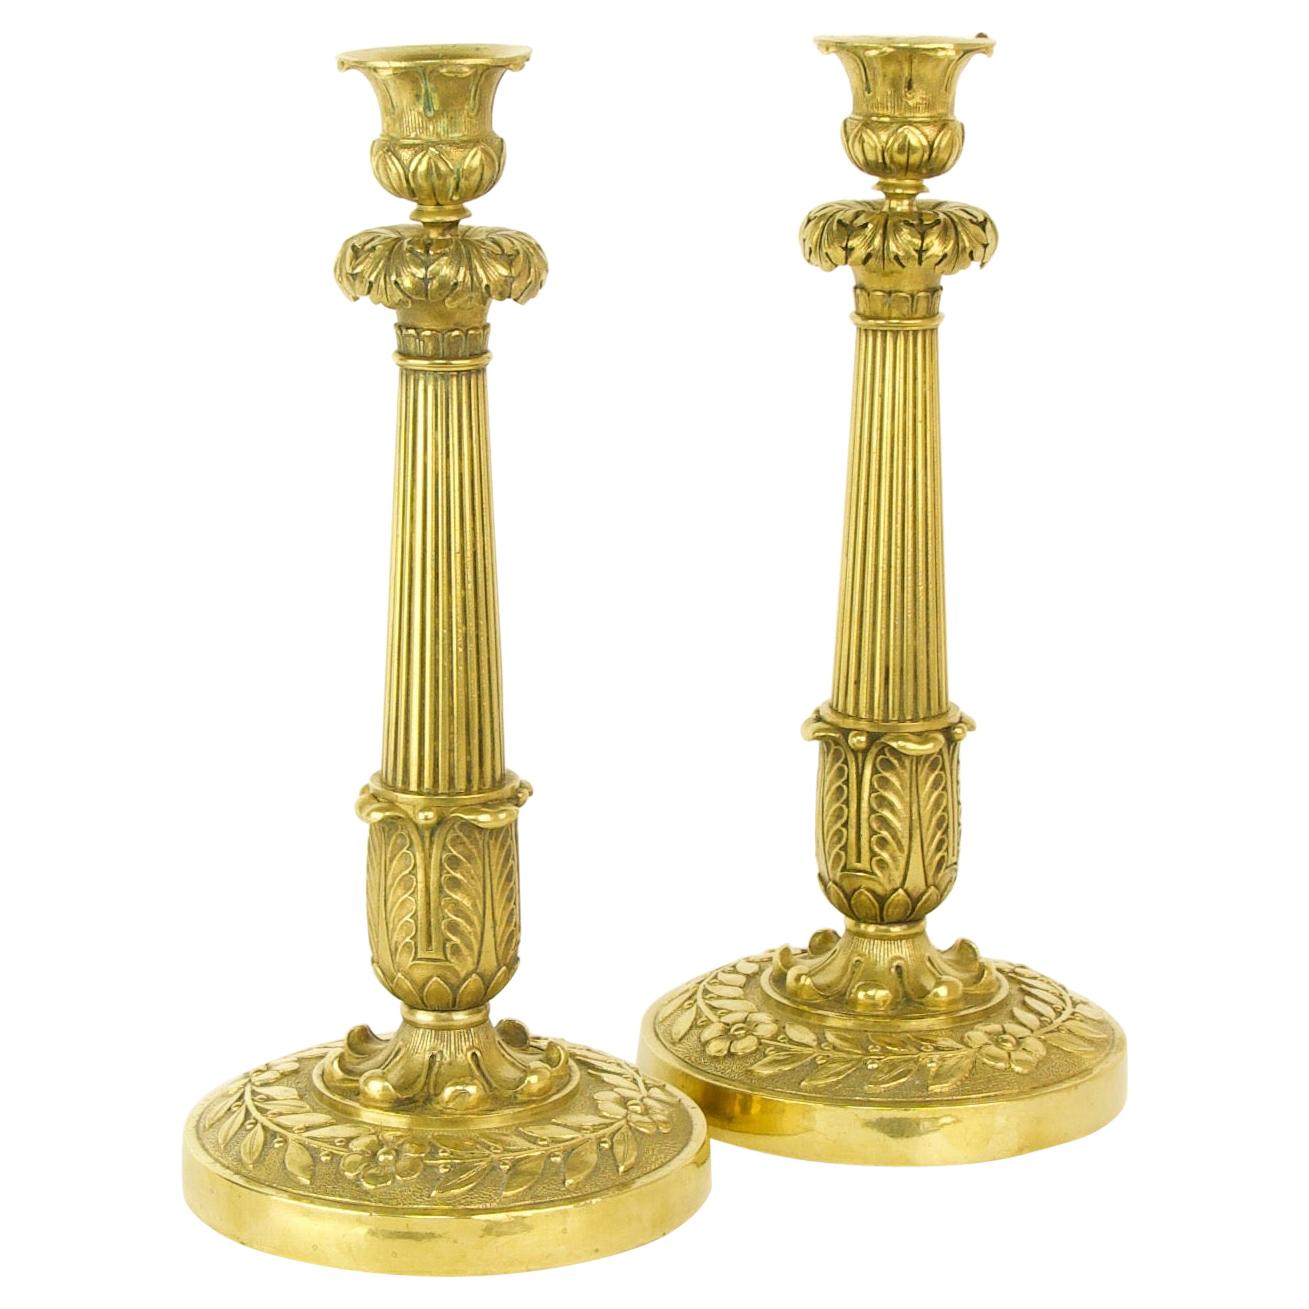 Paire de chandeliers Empire en bronze doré du début du 19e siècle, vers 1820